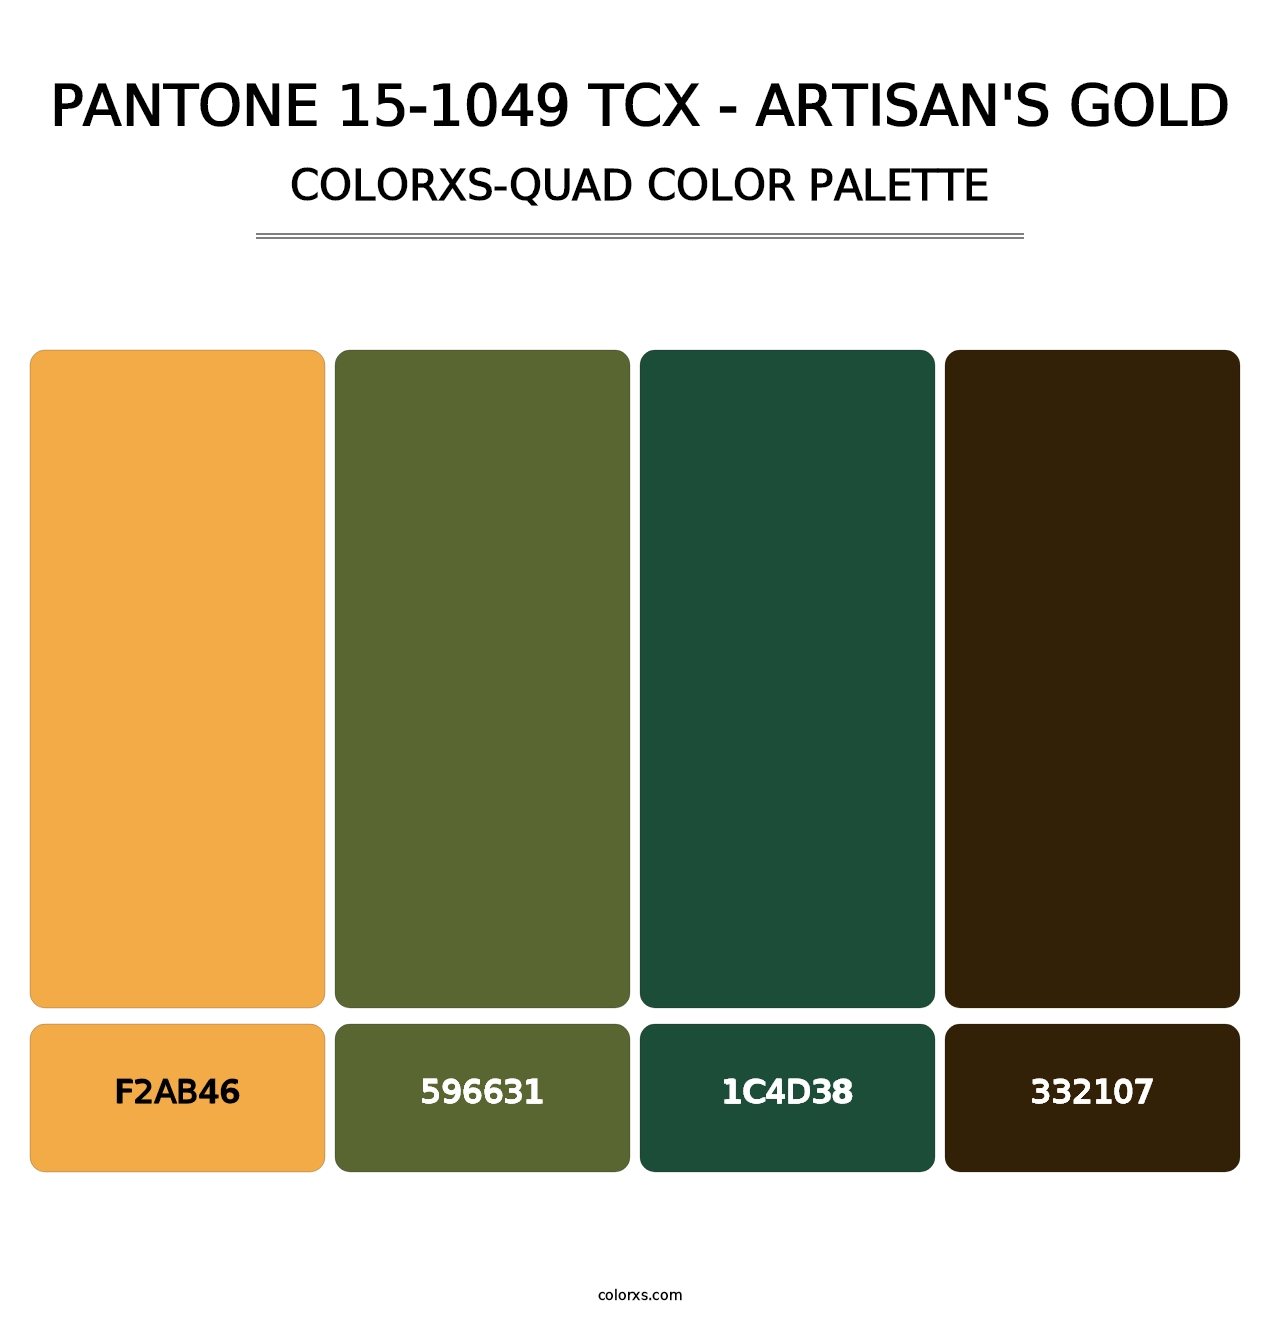 PANTONE 15-1049 TCX - Artisan's Gold - Colorxs Quad Palette